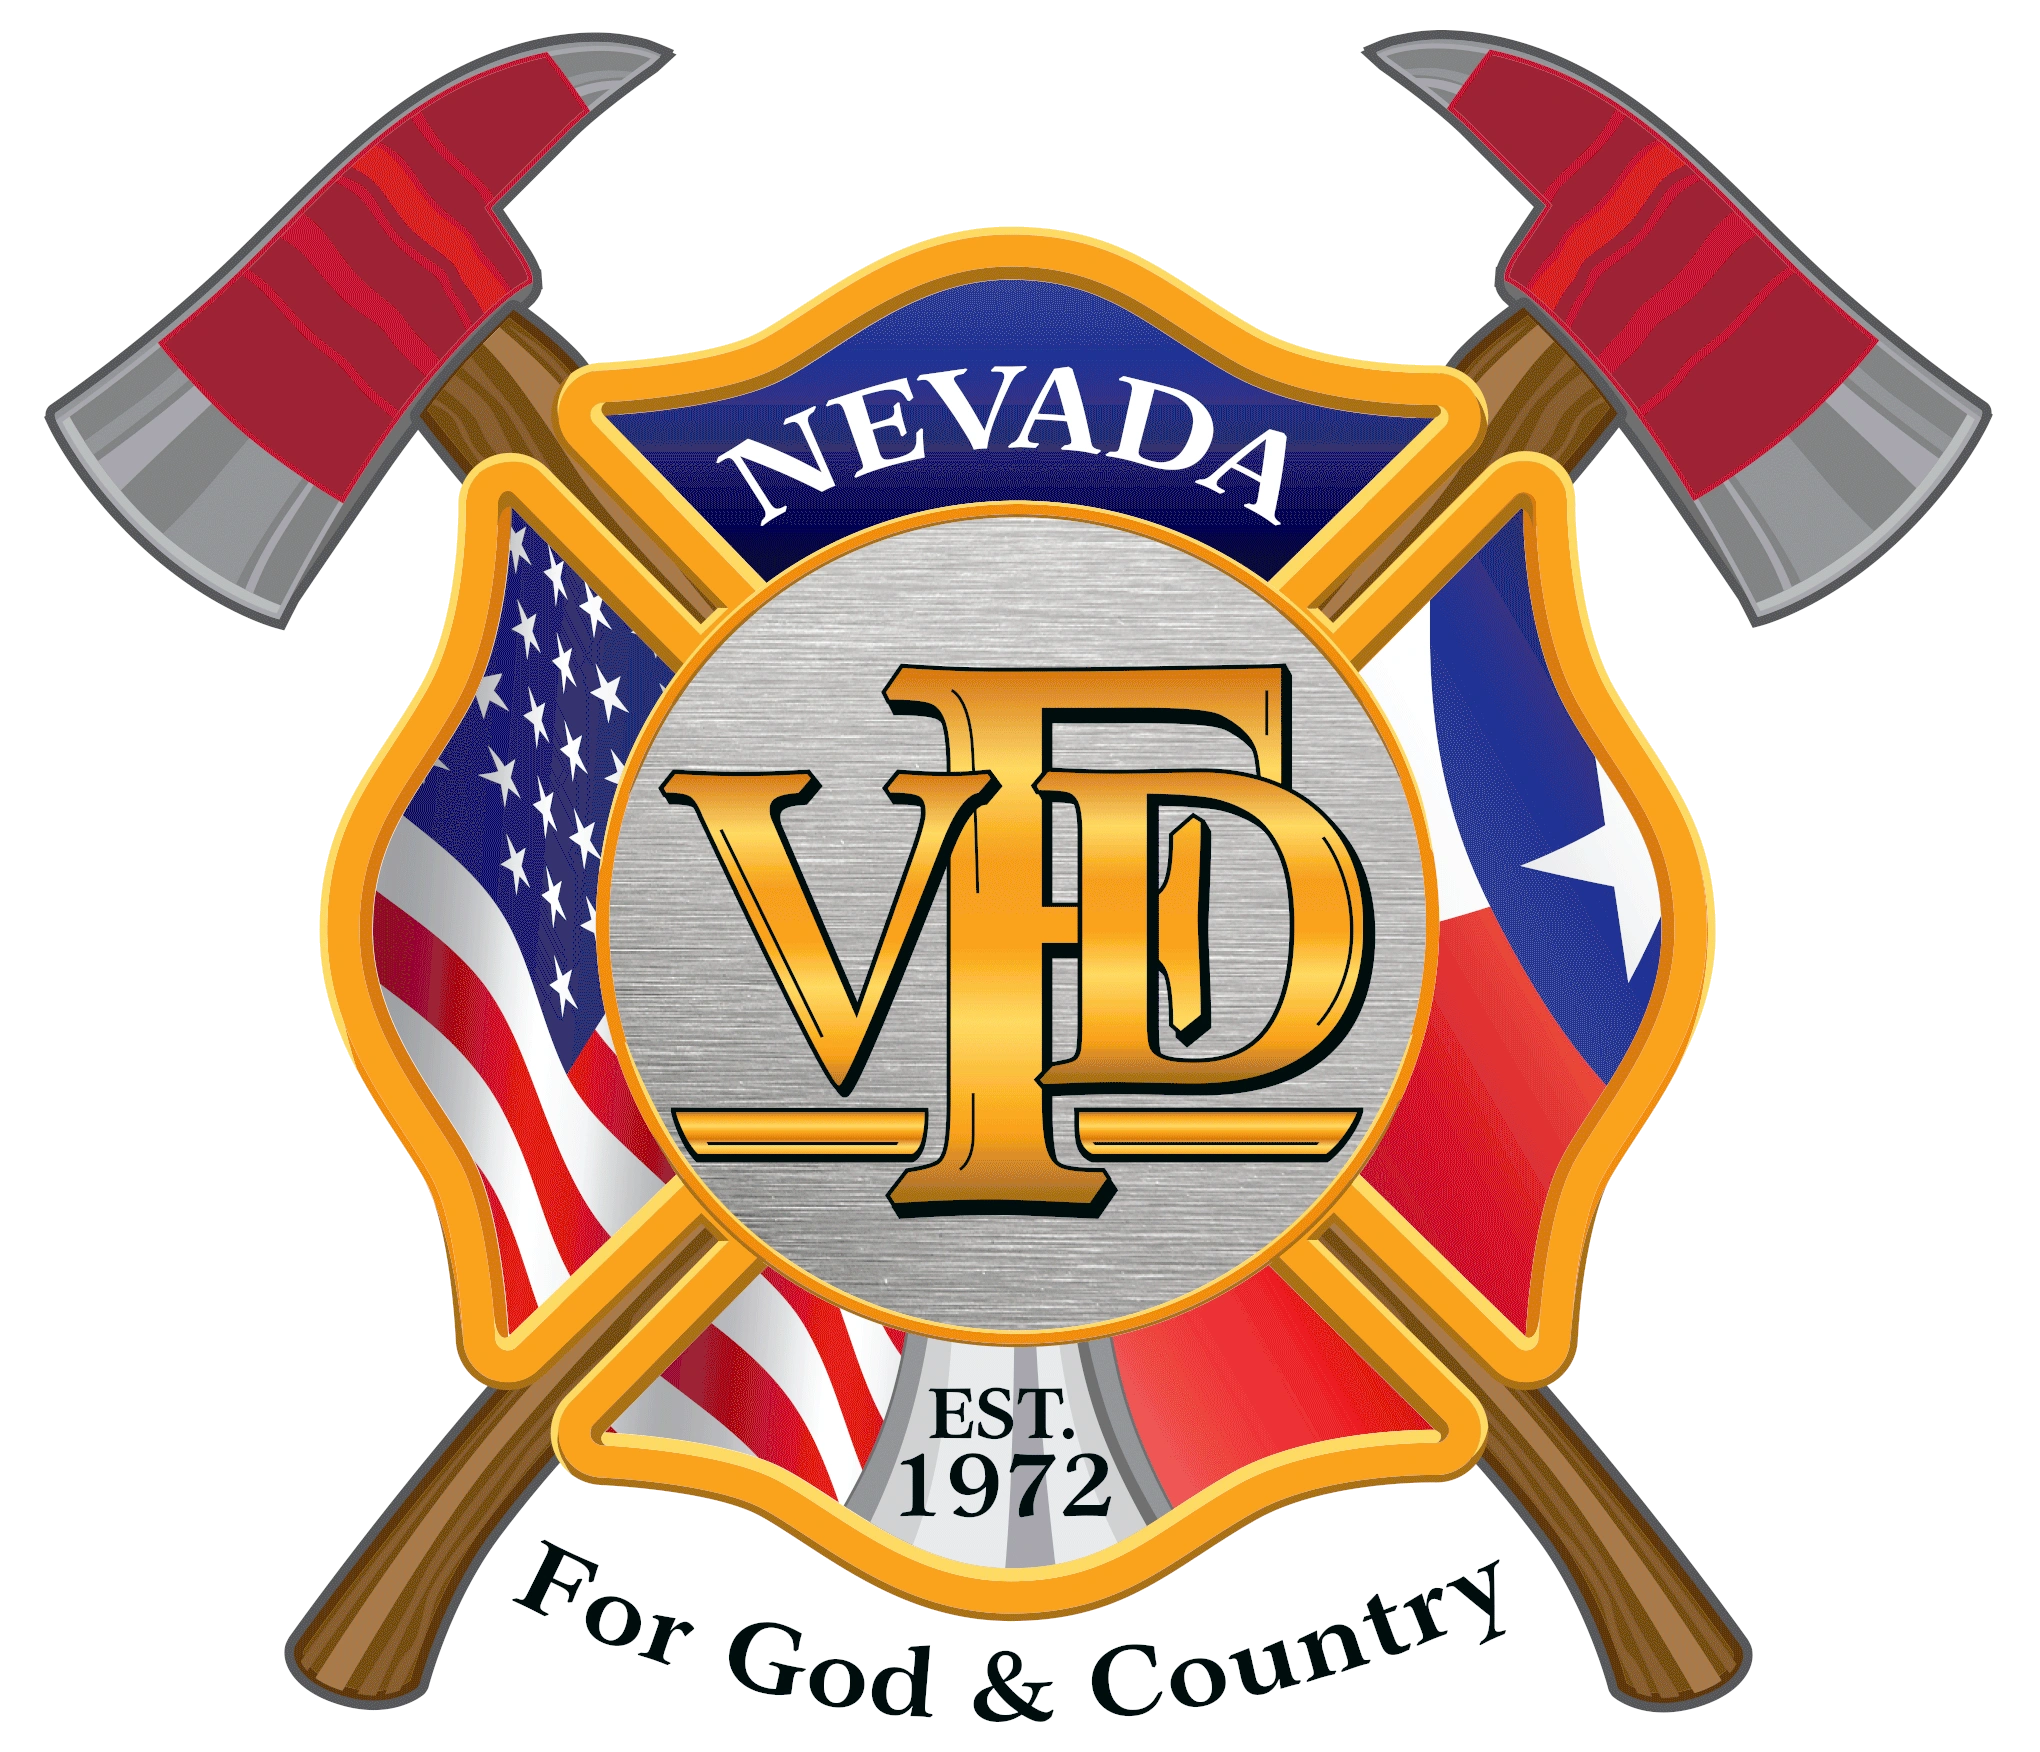 Nevada Volunteer Fire Department